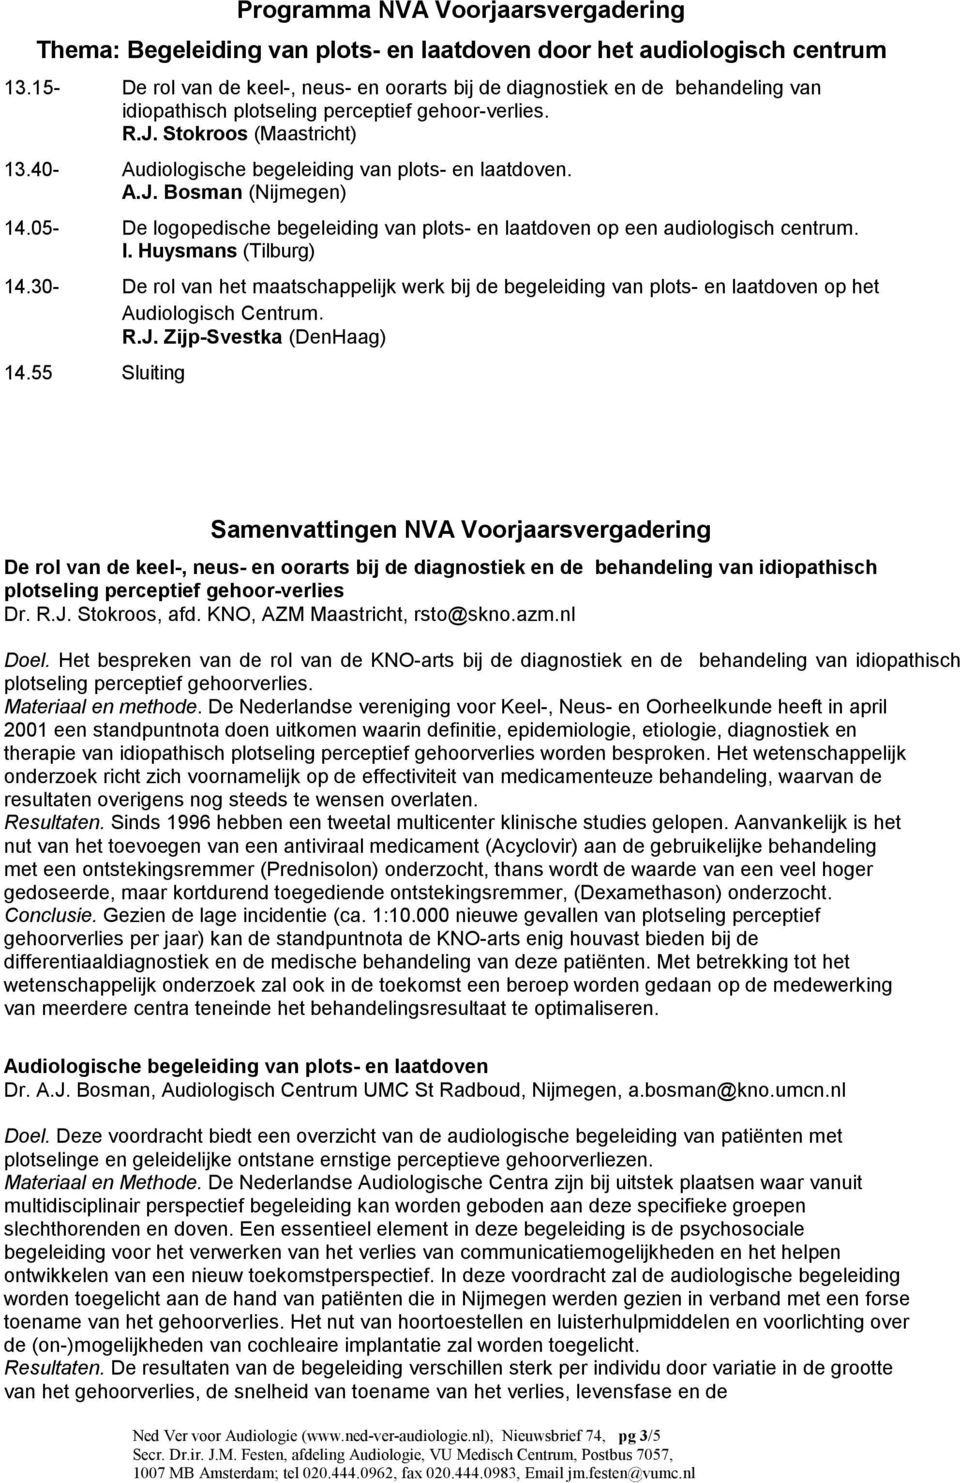 40- Audiologische begeleiding van plots- en laatdoven. A.J. Bosman (Nijmegen) 14.05- De logopedische begeleiding van plots- en laatdoven op een audiologisch centrum. I. Huysmans (Tilburg) 14.